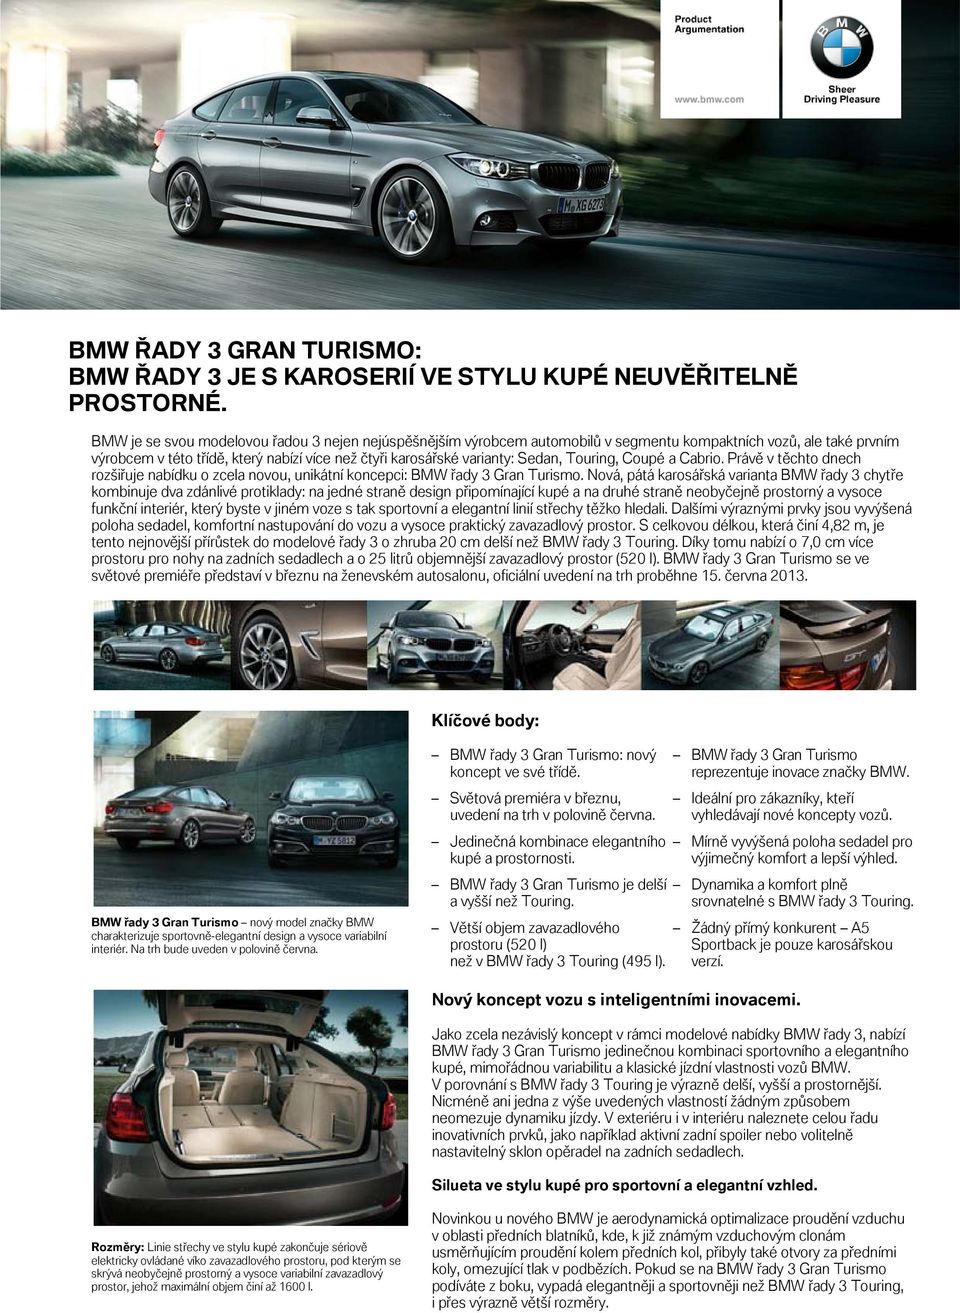 Touring, Coupé a Cabrio. Právě v těchto dnech rozšiřuje nabídku o zcela novou, unikátní koncepci: BMW řady 3 Gran Turismo.